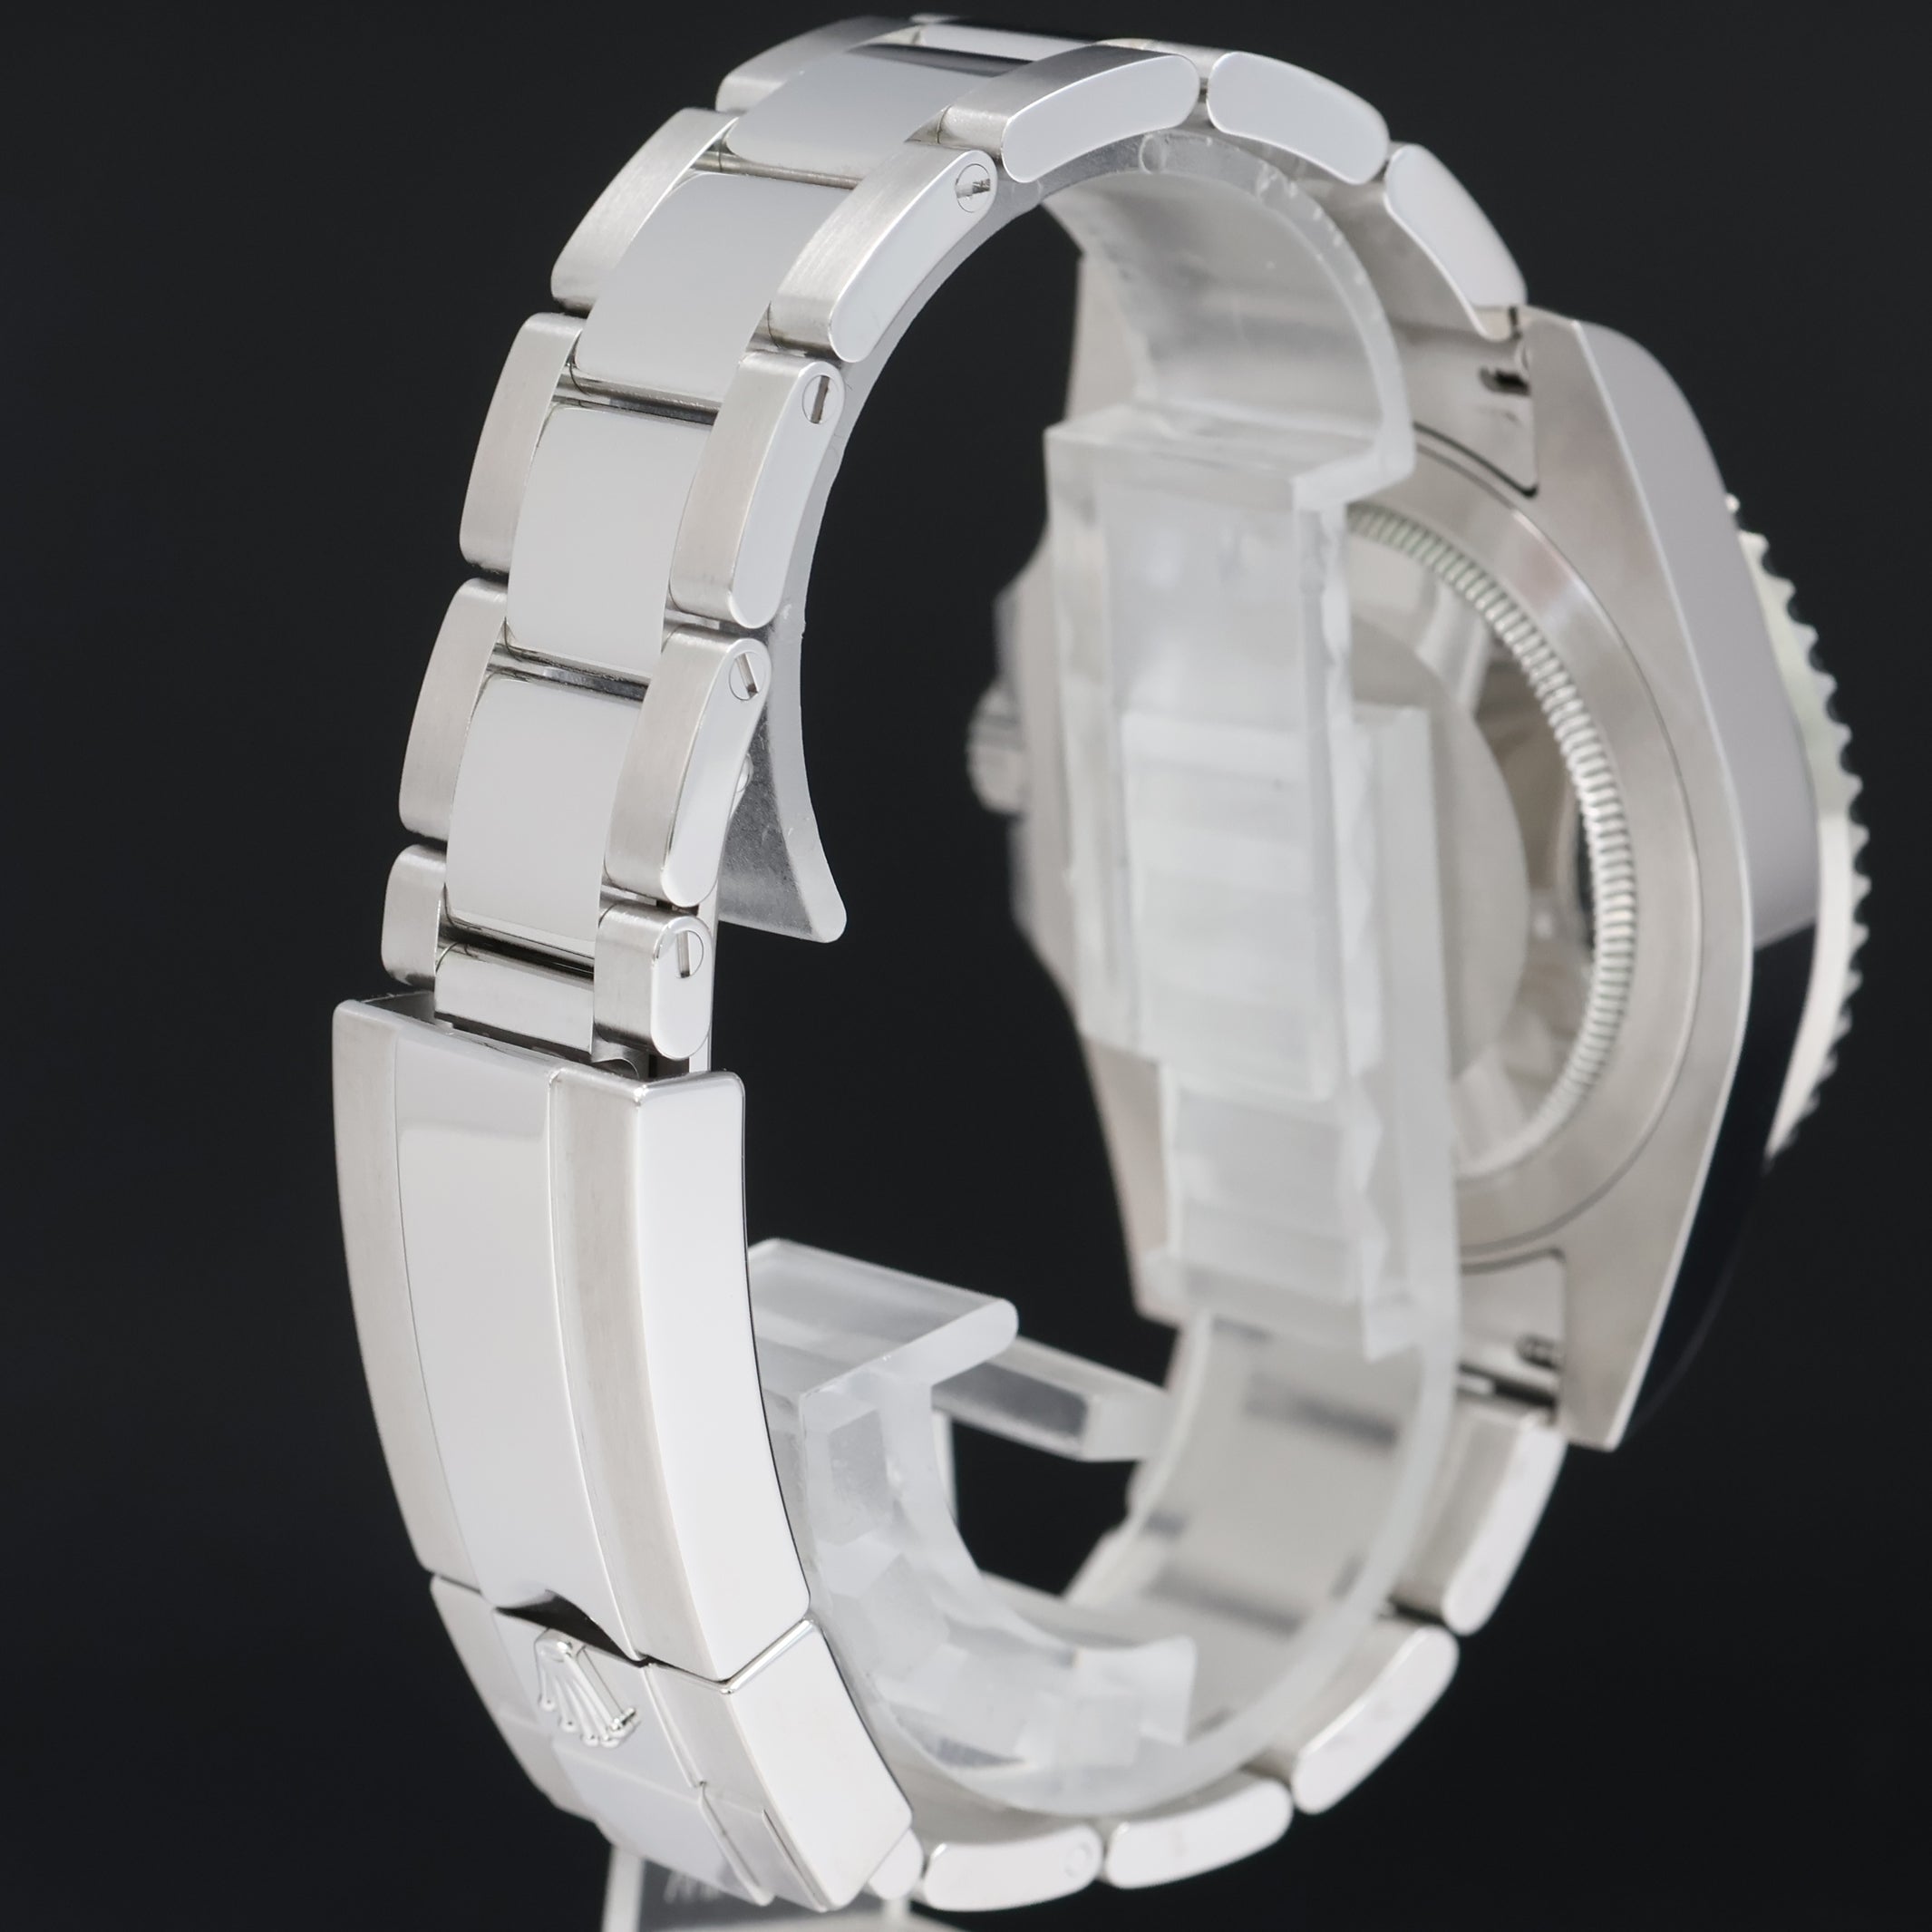 MINT 2016 Rolex GMT Master II 116710 Steel Ceramic Black Dial 40mm Watch Box